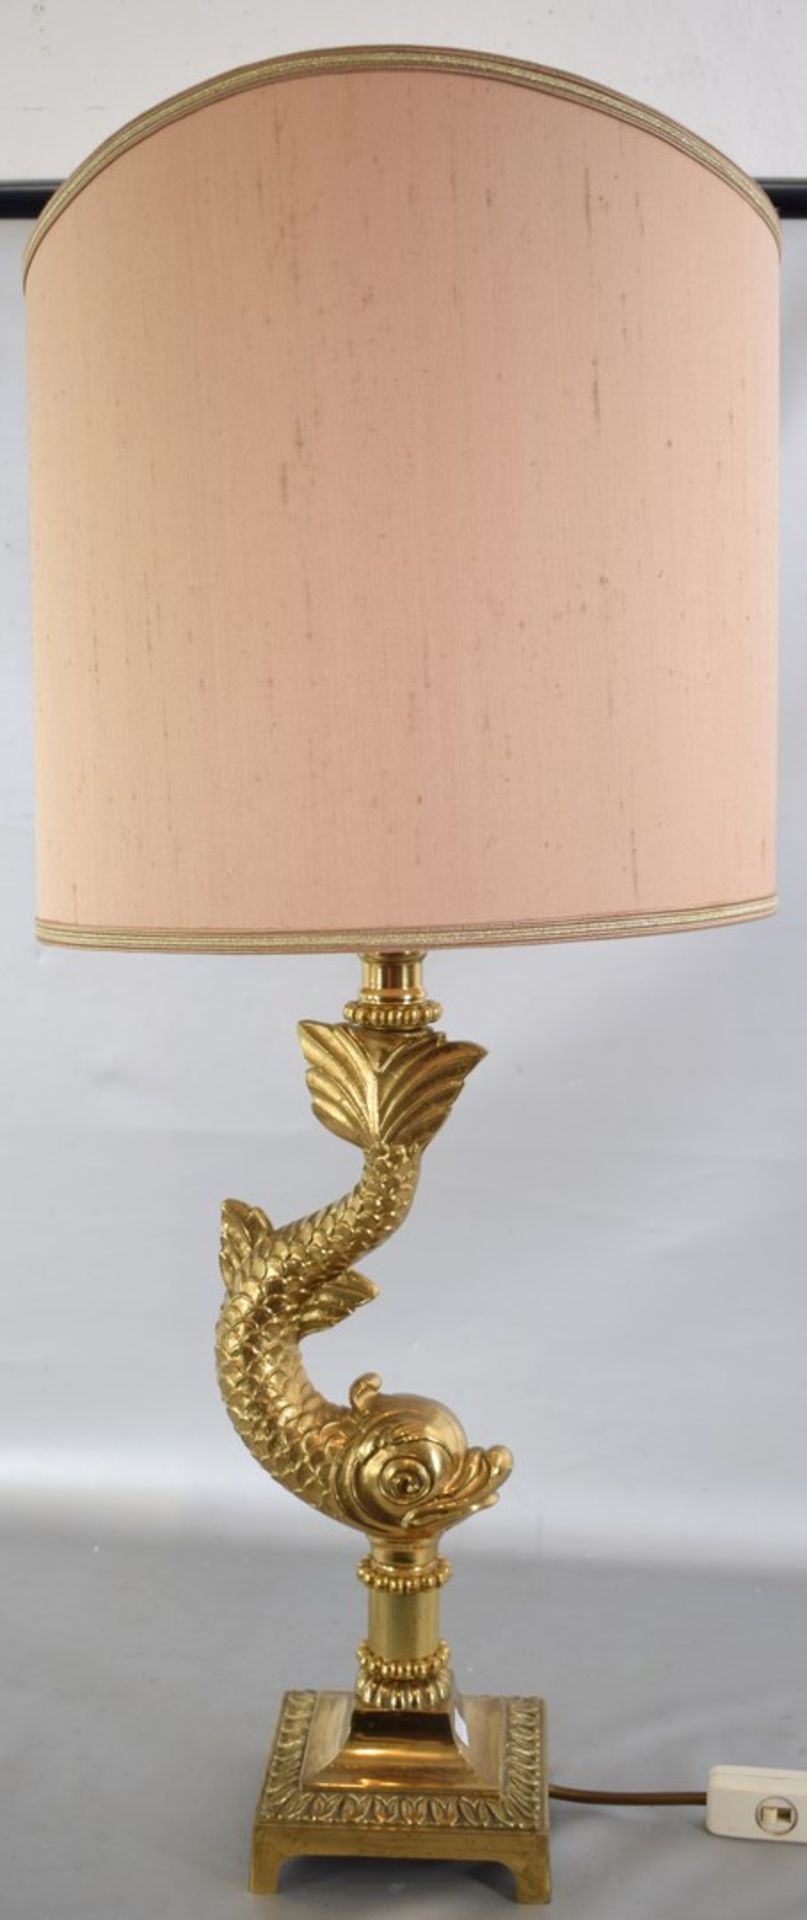 Tischlampe 1-lichtig, Messingfuß, in Form eines Fisches, auf rechteckigem Sockel, beigefarbener